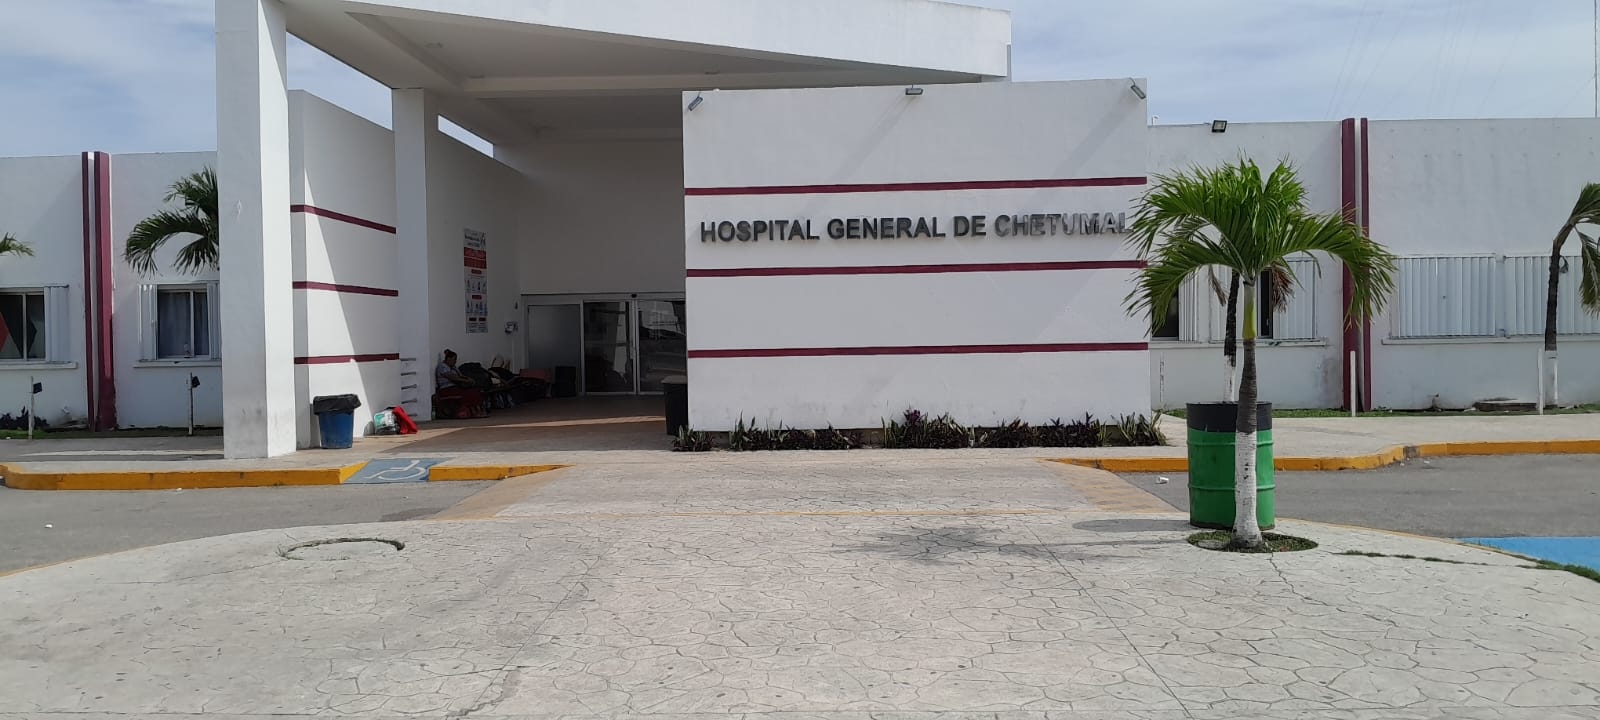 'Prohibido enfermarse' en fines de semana en Chetumal; hospitales no atienden